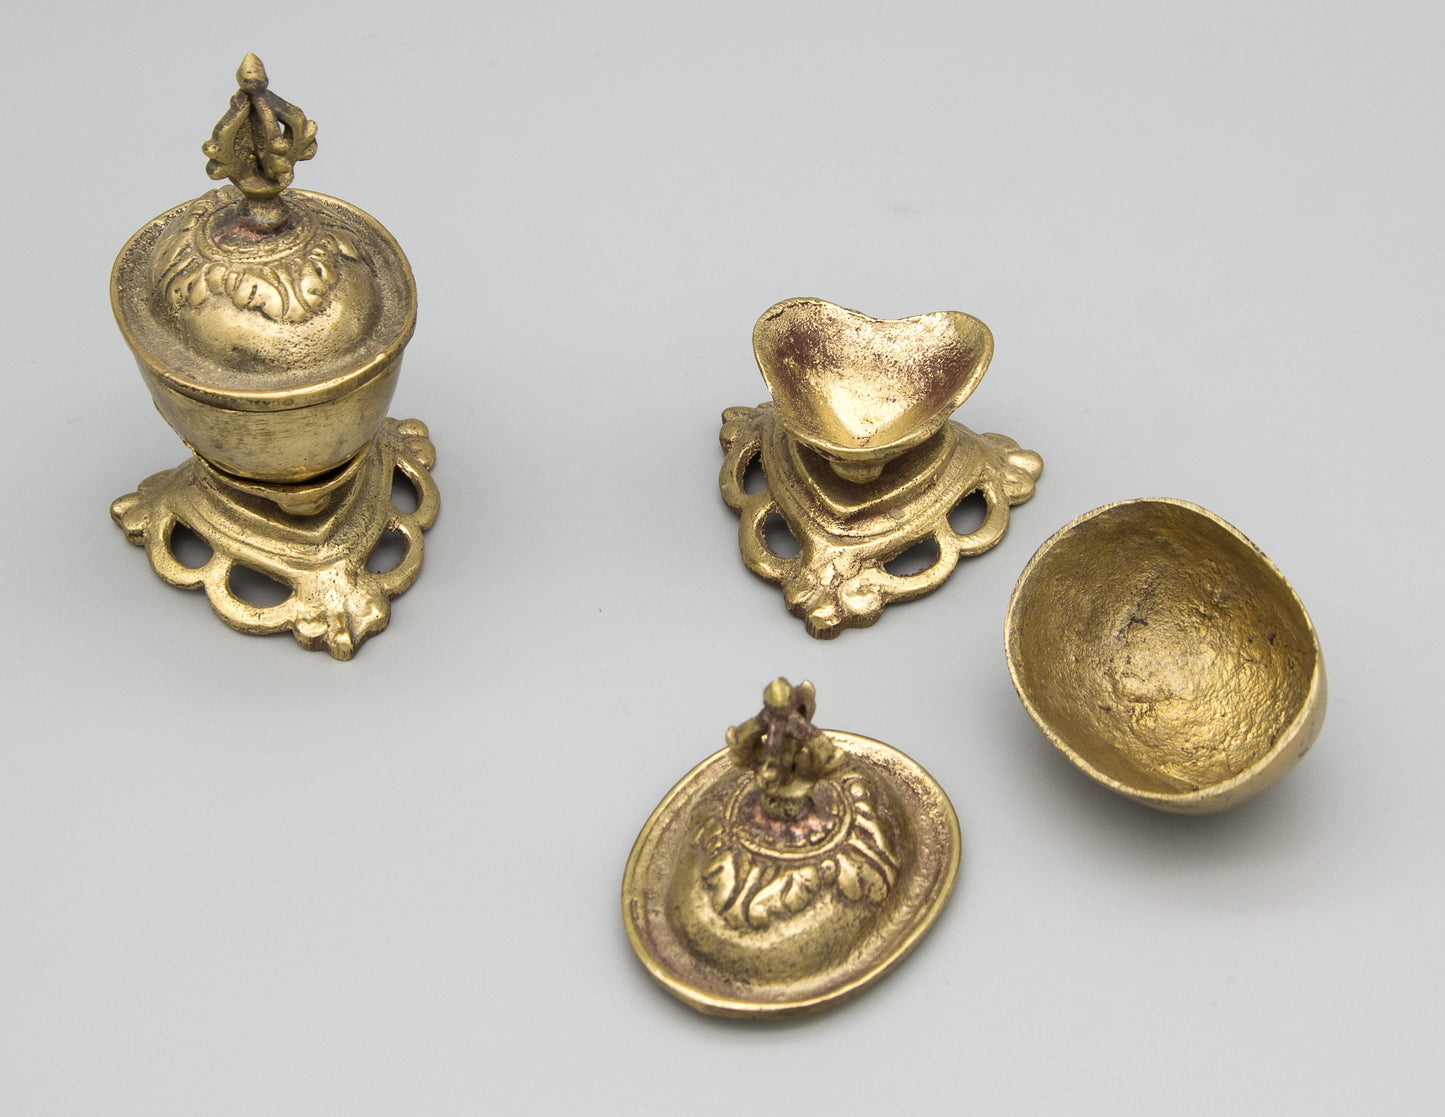 Pair of Brass Kapala – 7cm